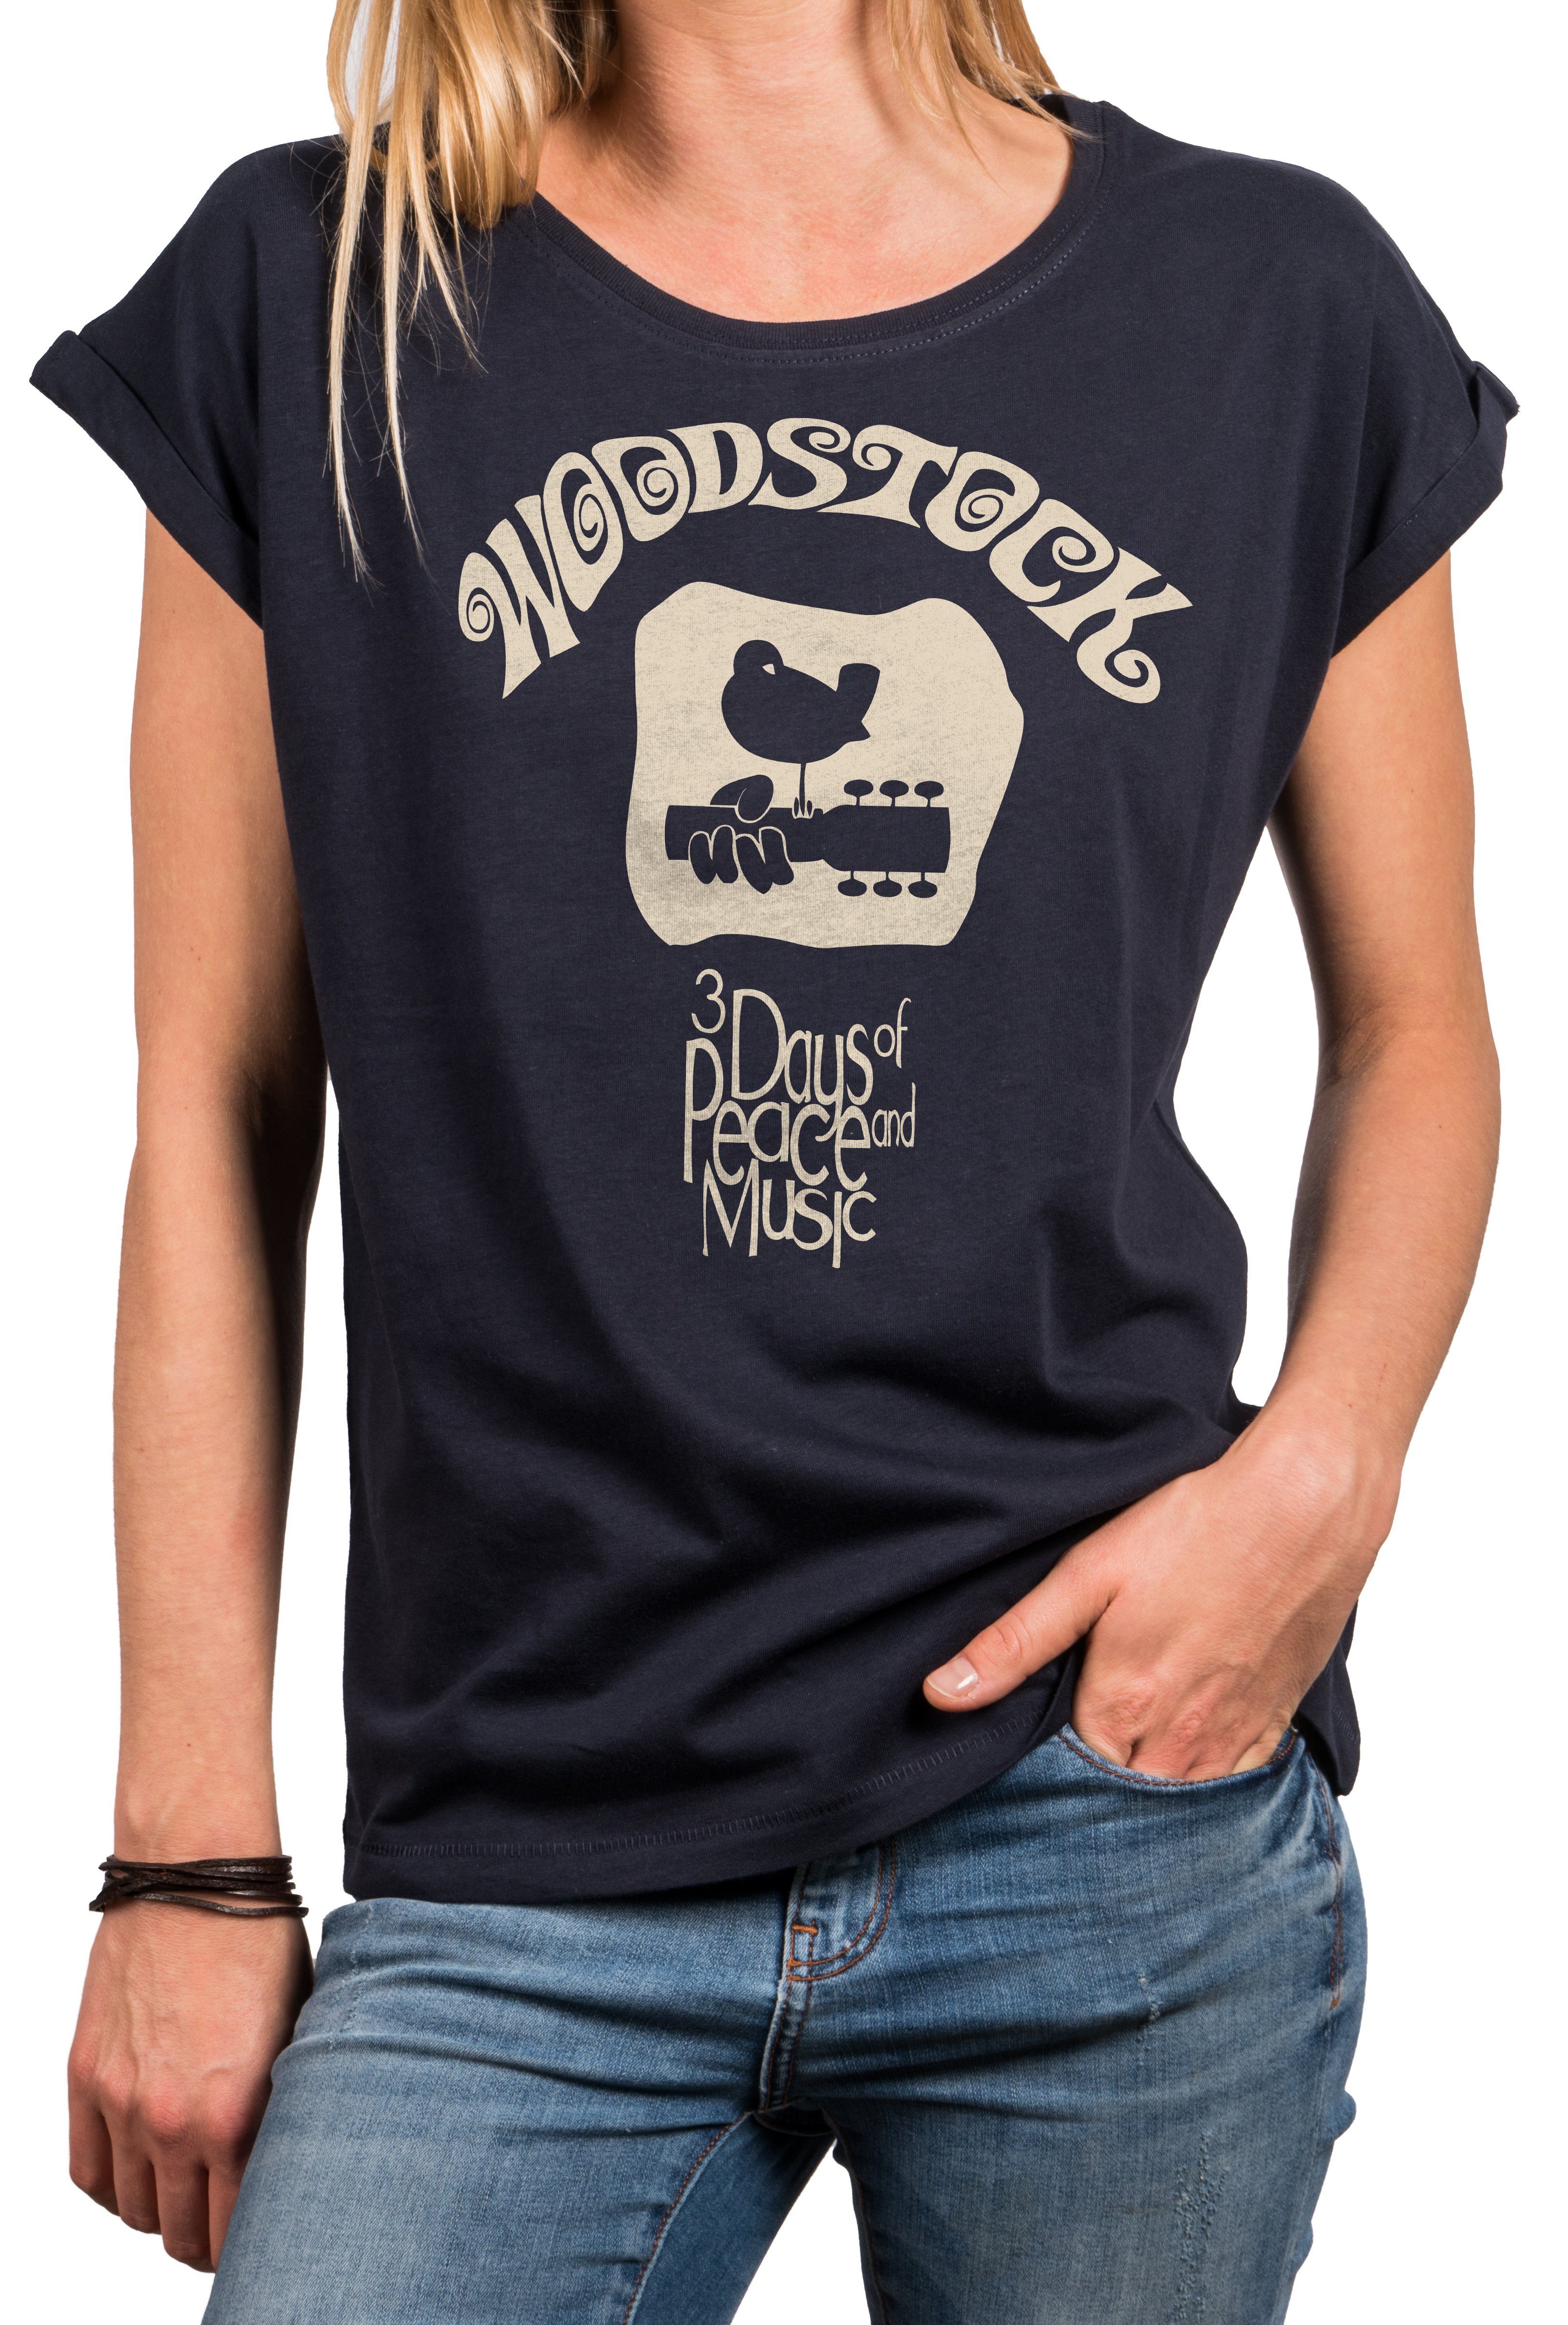 MAKAYA Print-Shirt Damen Oversize Top mit Aufdruck-Woodstock Logo Musik Motiv mit Spruch (Tunika elegant, schwarz, blau, grau) große Größen